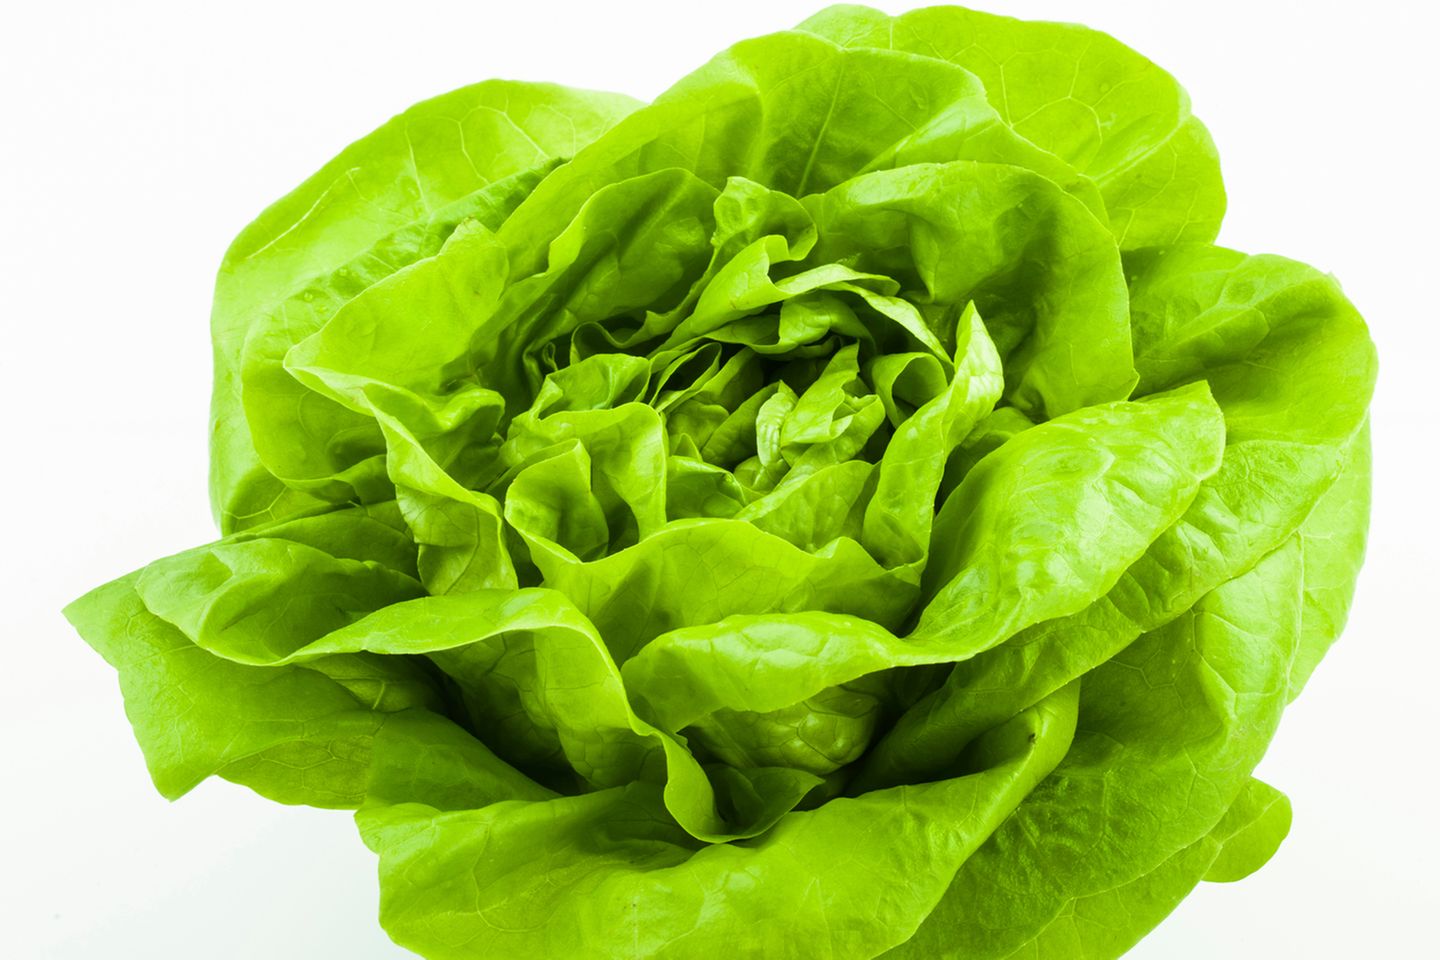 Kopfsalat ist ein perfekter Lieferant für Vitamin C, Vitamin E, Eisen, Magnesium und Folsäure. Das beste daran: Er kann gleich mit einer ganzen Reihe anderer gesunder Gemüsesorten kombiniert werden.